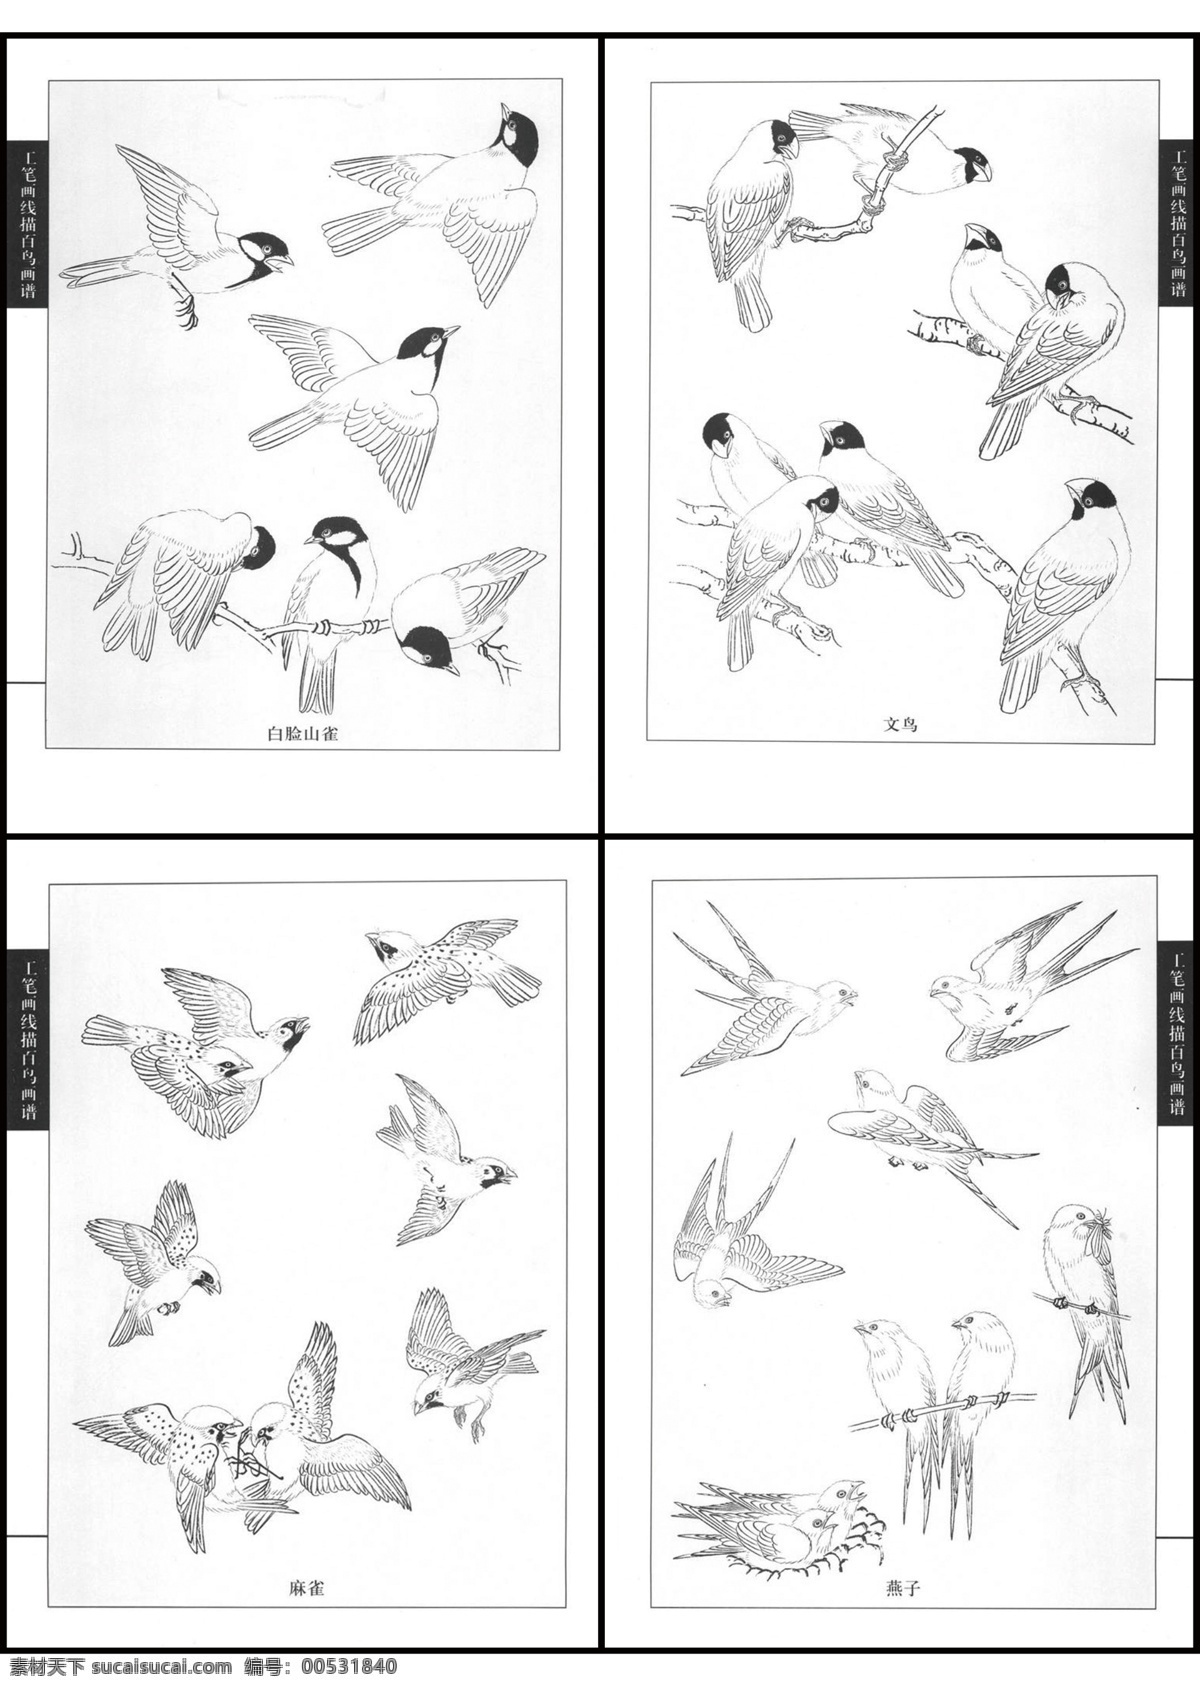 工笔画 线描 百鸟 图 白色 传统 黑色 麻雀 燕子 画法步骤 山雀 文鸟 psd源文件